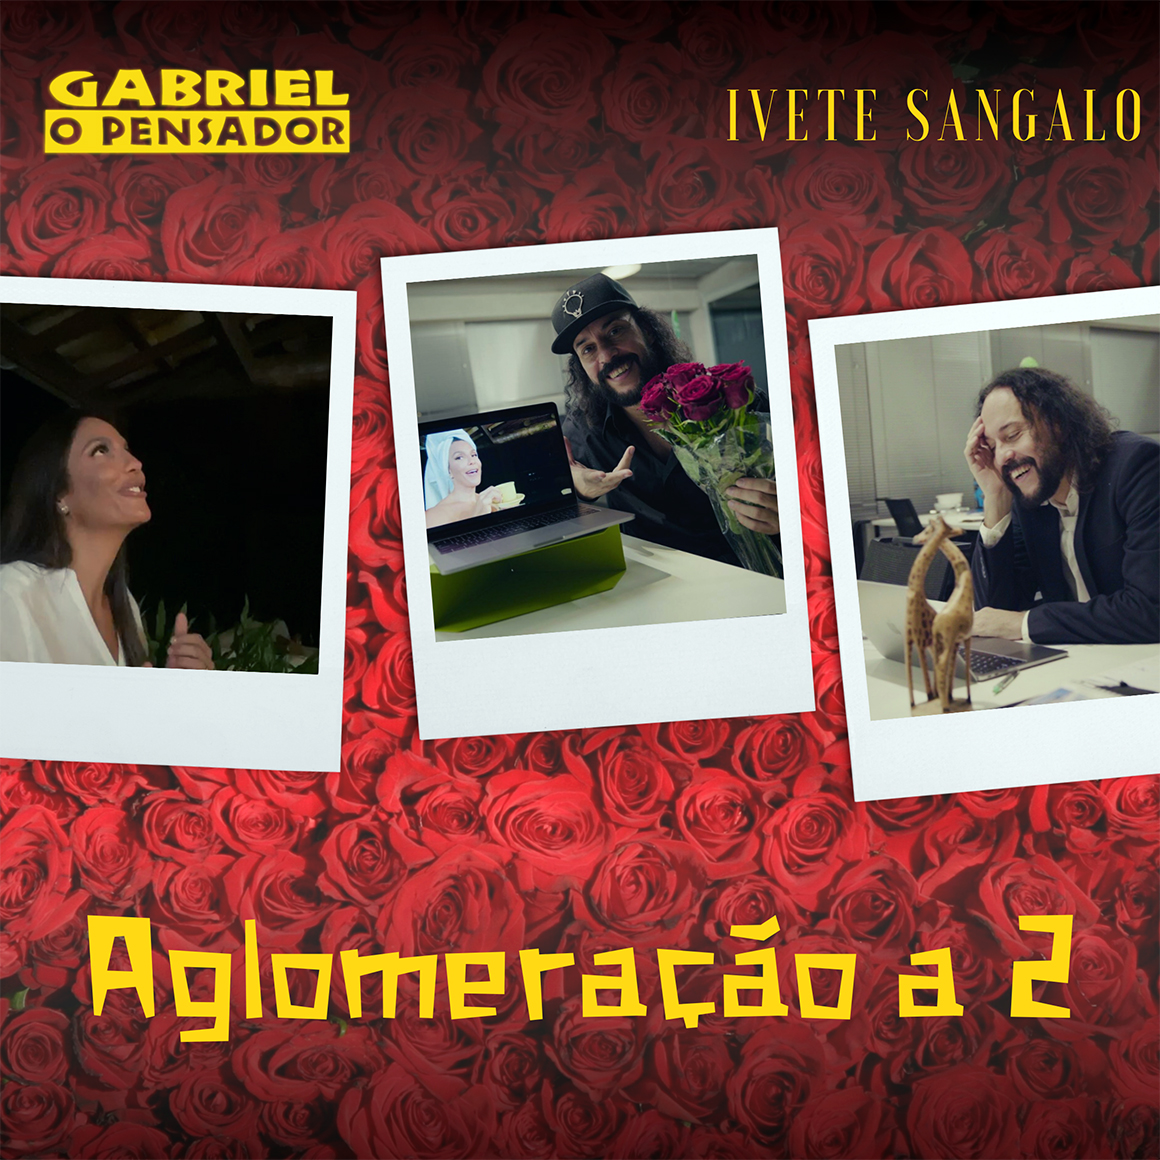 Ivete Sangalo se junta a Gabriel o Pensador em “Aglomeração a 2”